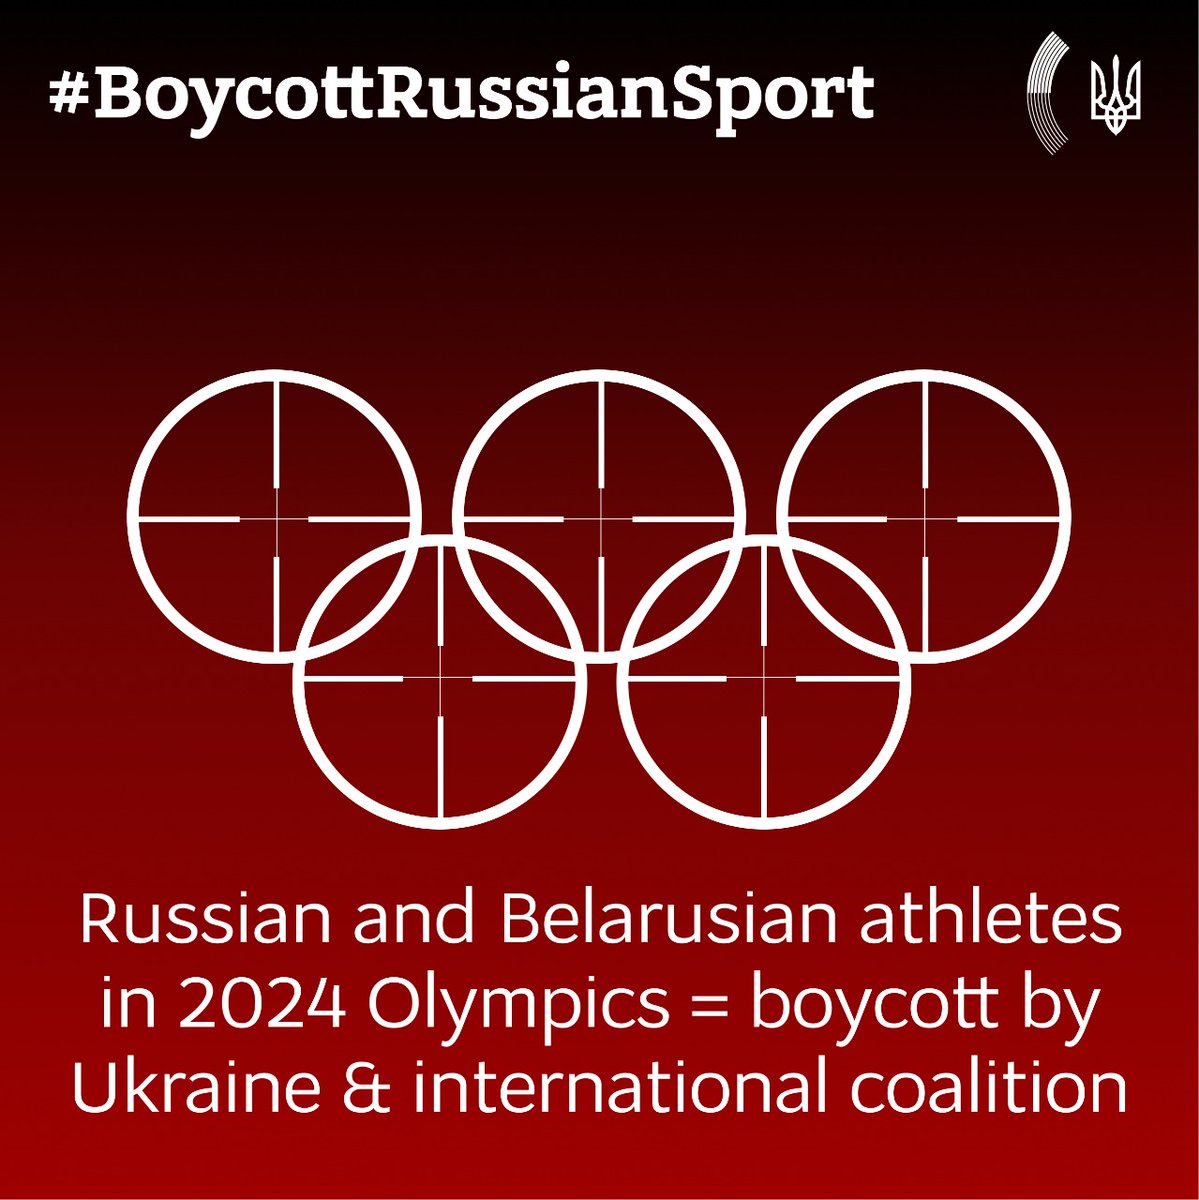 L'Ucraina non permetterà l'uso di sport contro l'umanità e per legittimazione della guerra.
Qualsiasi partecipazione di atleti #russi e #bielorussi alle #Olimpiadi2024 comporterà un boicottaggio da parte d'Ucraina e della coalizione internazionale.
@olympics
#BoycottRussianSport